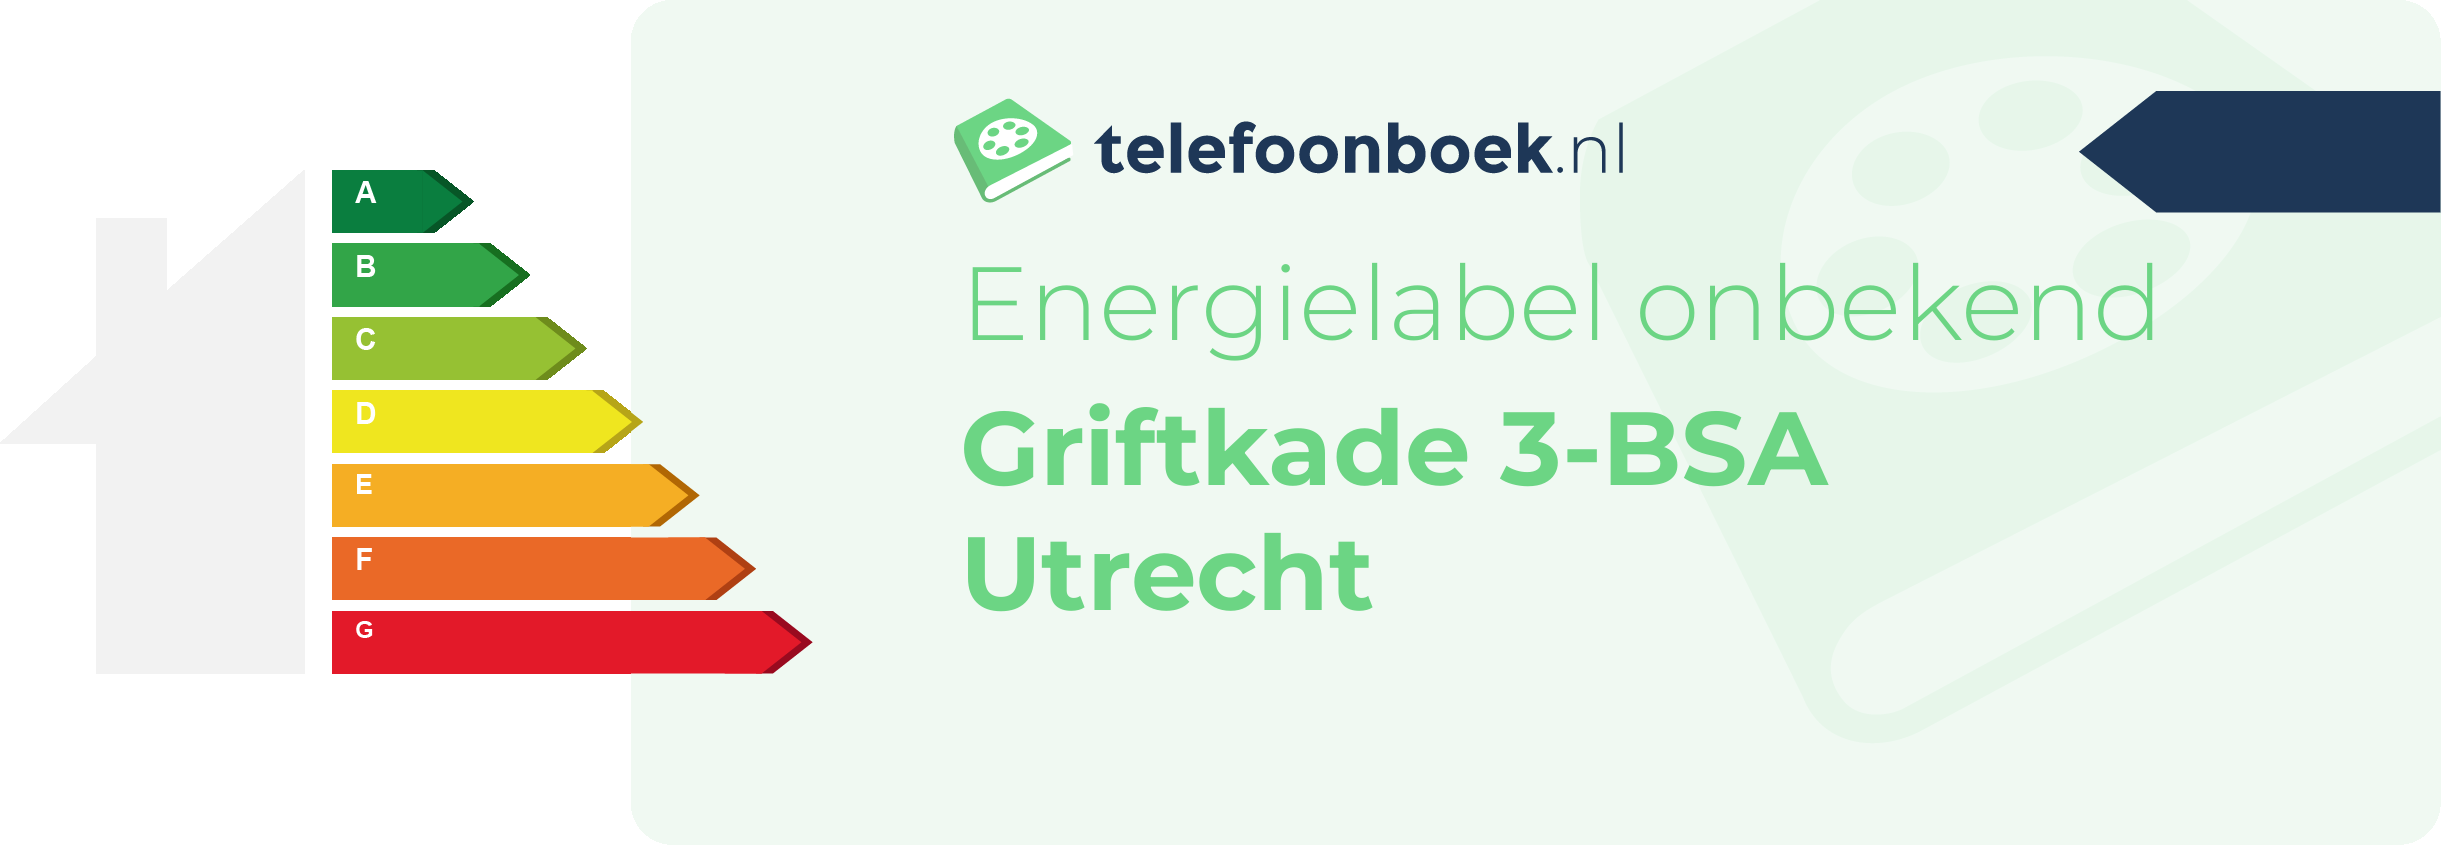 Energielabel Griftkade 3-BSA Utrecht